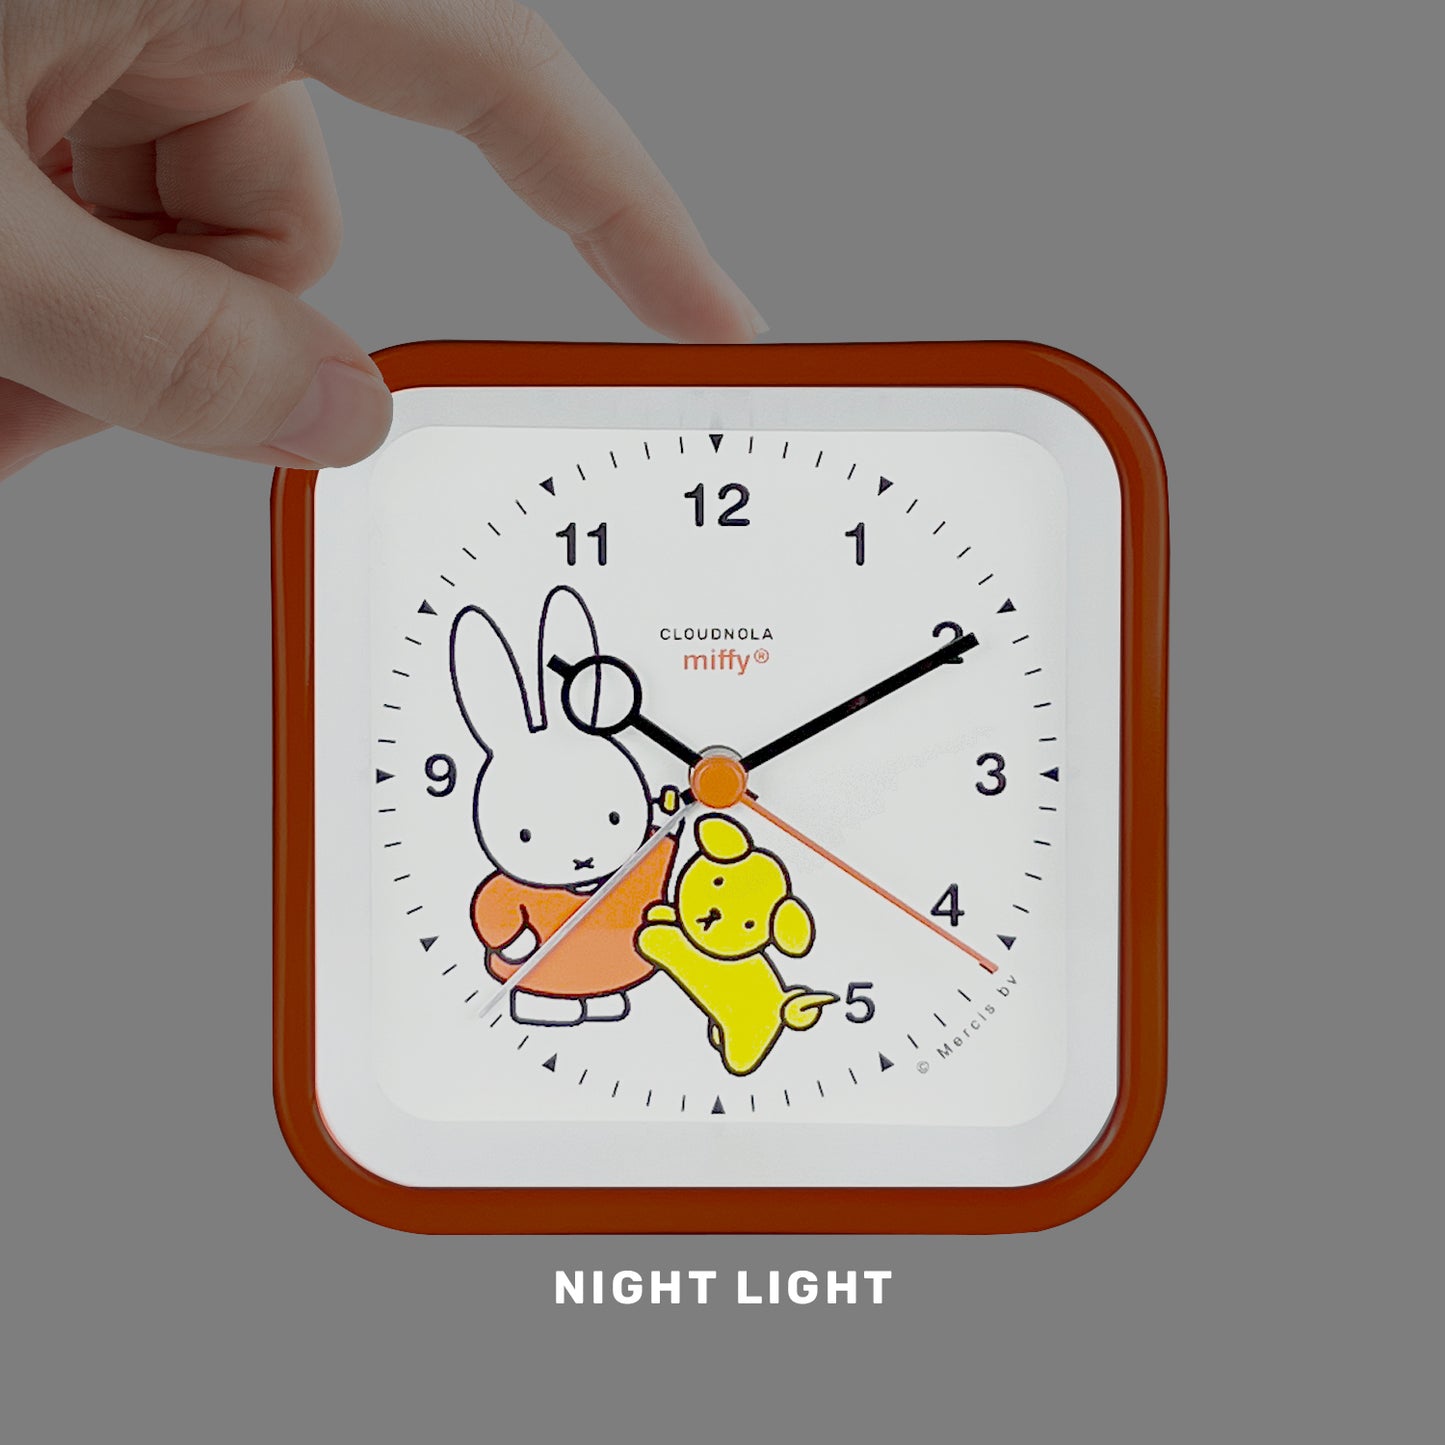 Réveil Miffy Orange de Nijntje - Analogique - Lumière LED - Fonction Snooze - Utrecht Heritage